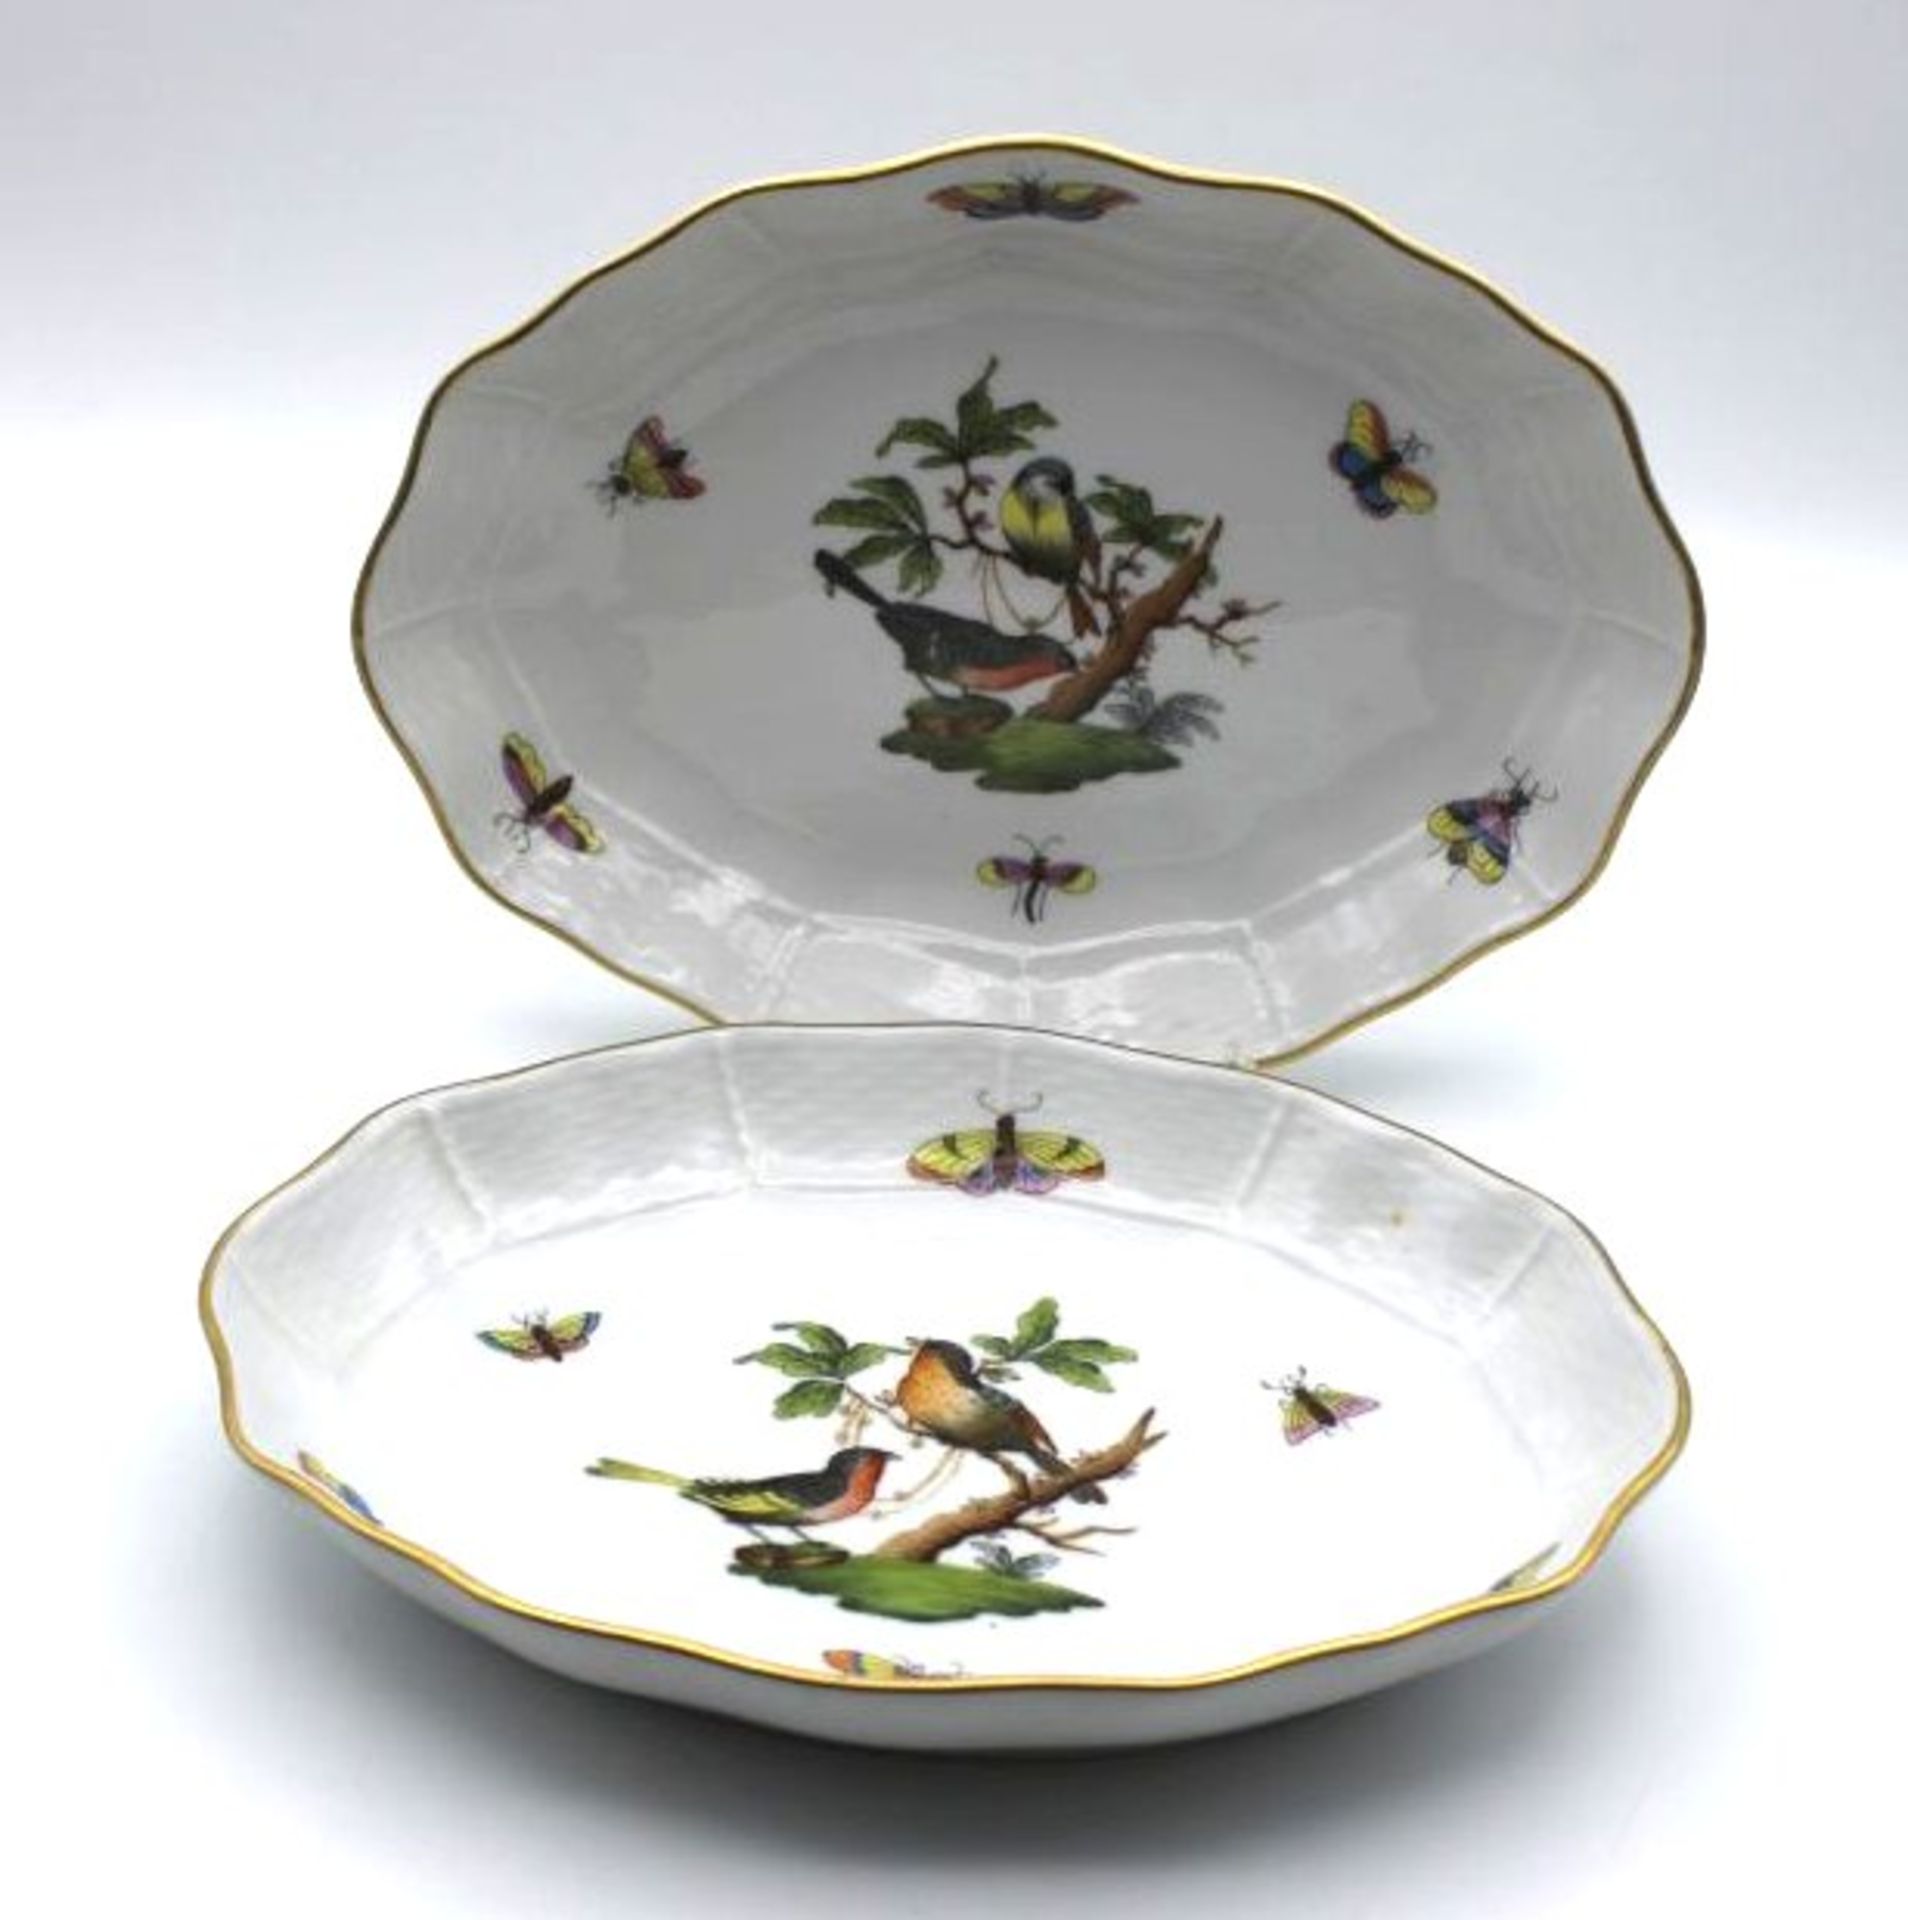 2x ovale Schalen, Herend "Rothschild", bunte Bemalung mit Vögeln und Insekten, 15 x 19,5cm.